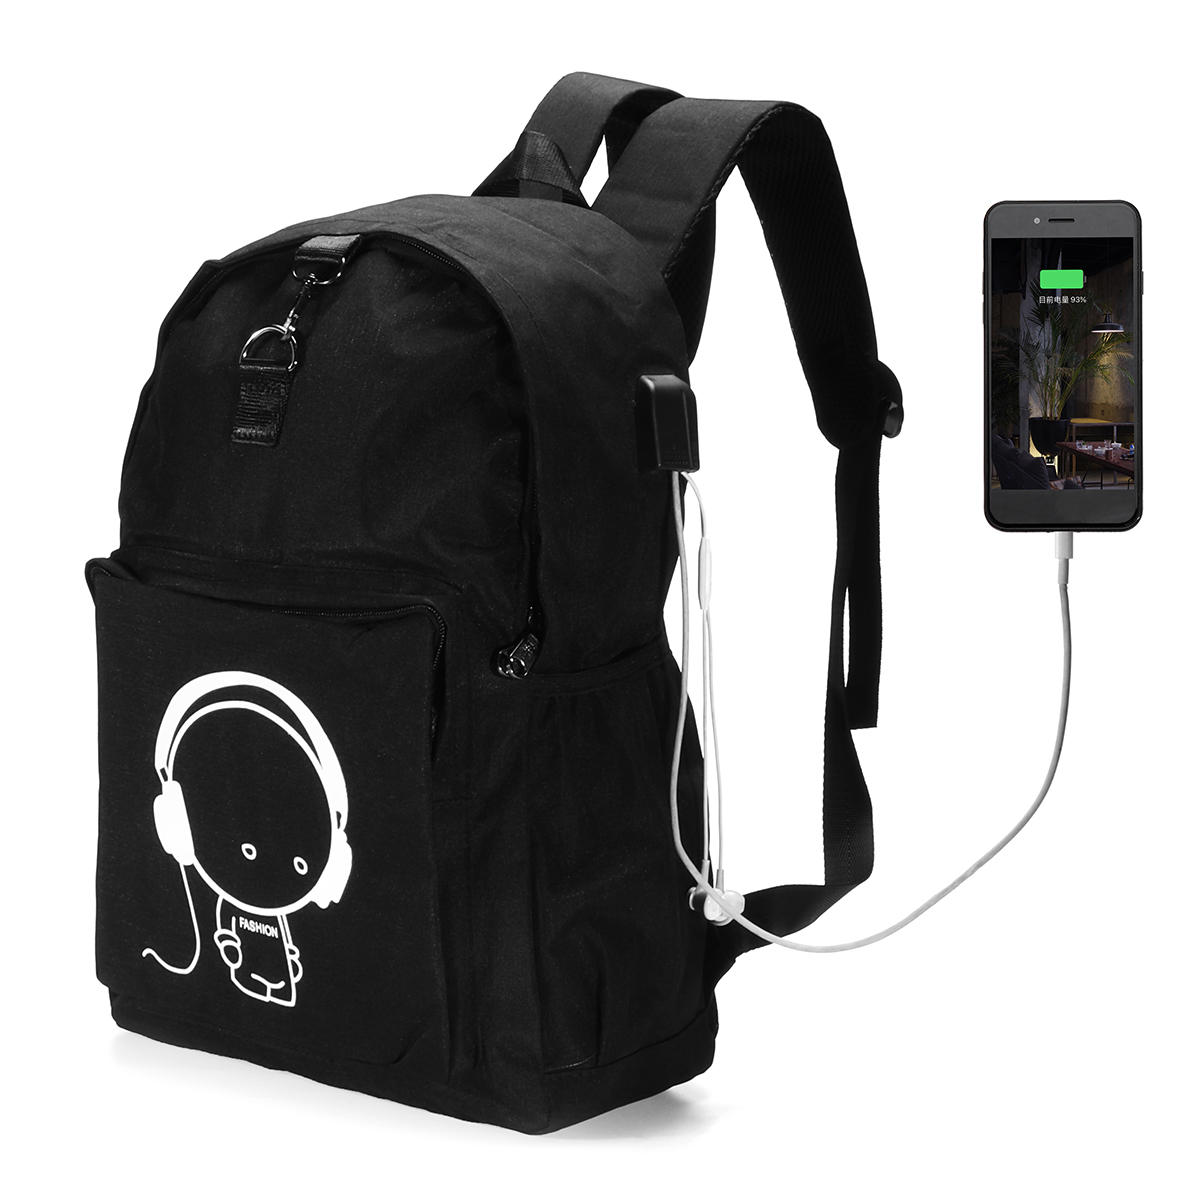 14-calowy, nocny plecak szkolny Plecak na laptopa Port ładujący USB do telefonu komórkowego  